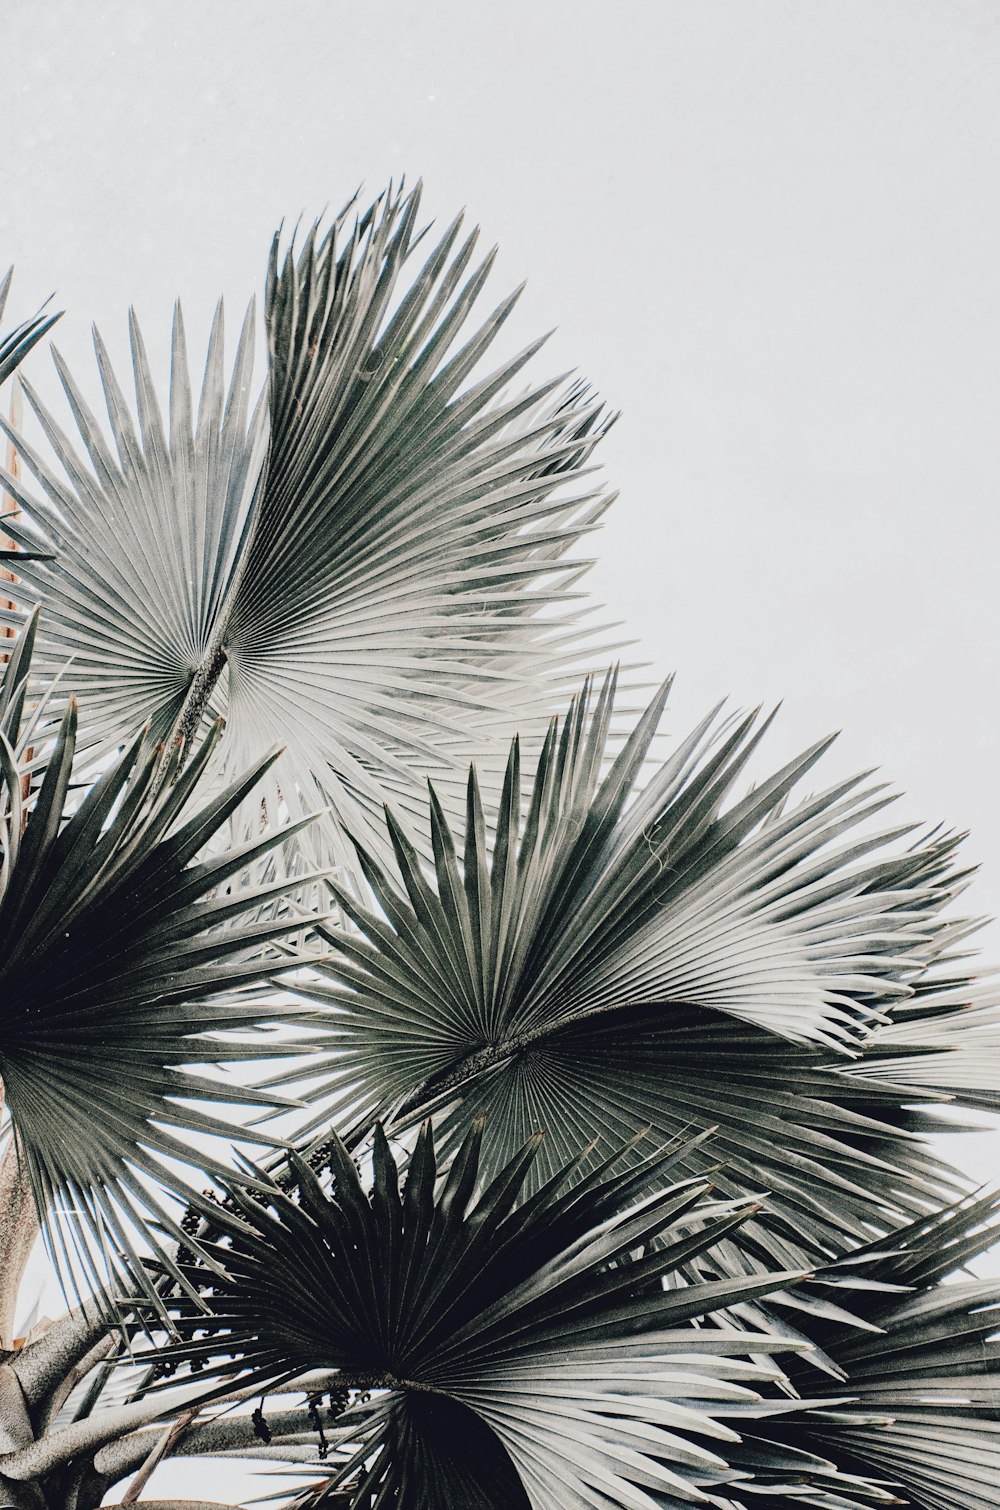 Lá dừa là biểu tượng của sự yên bình và tươi mới. Thưởng thức hình ảnh cây dừa để cảm nhận được một nét đẹp đến từ tự nhiên.